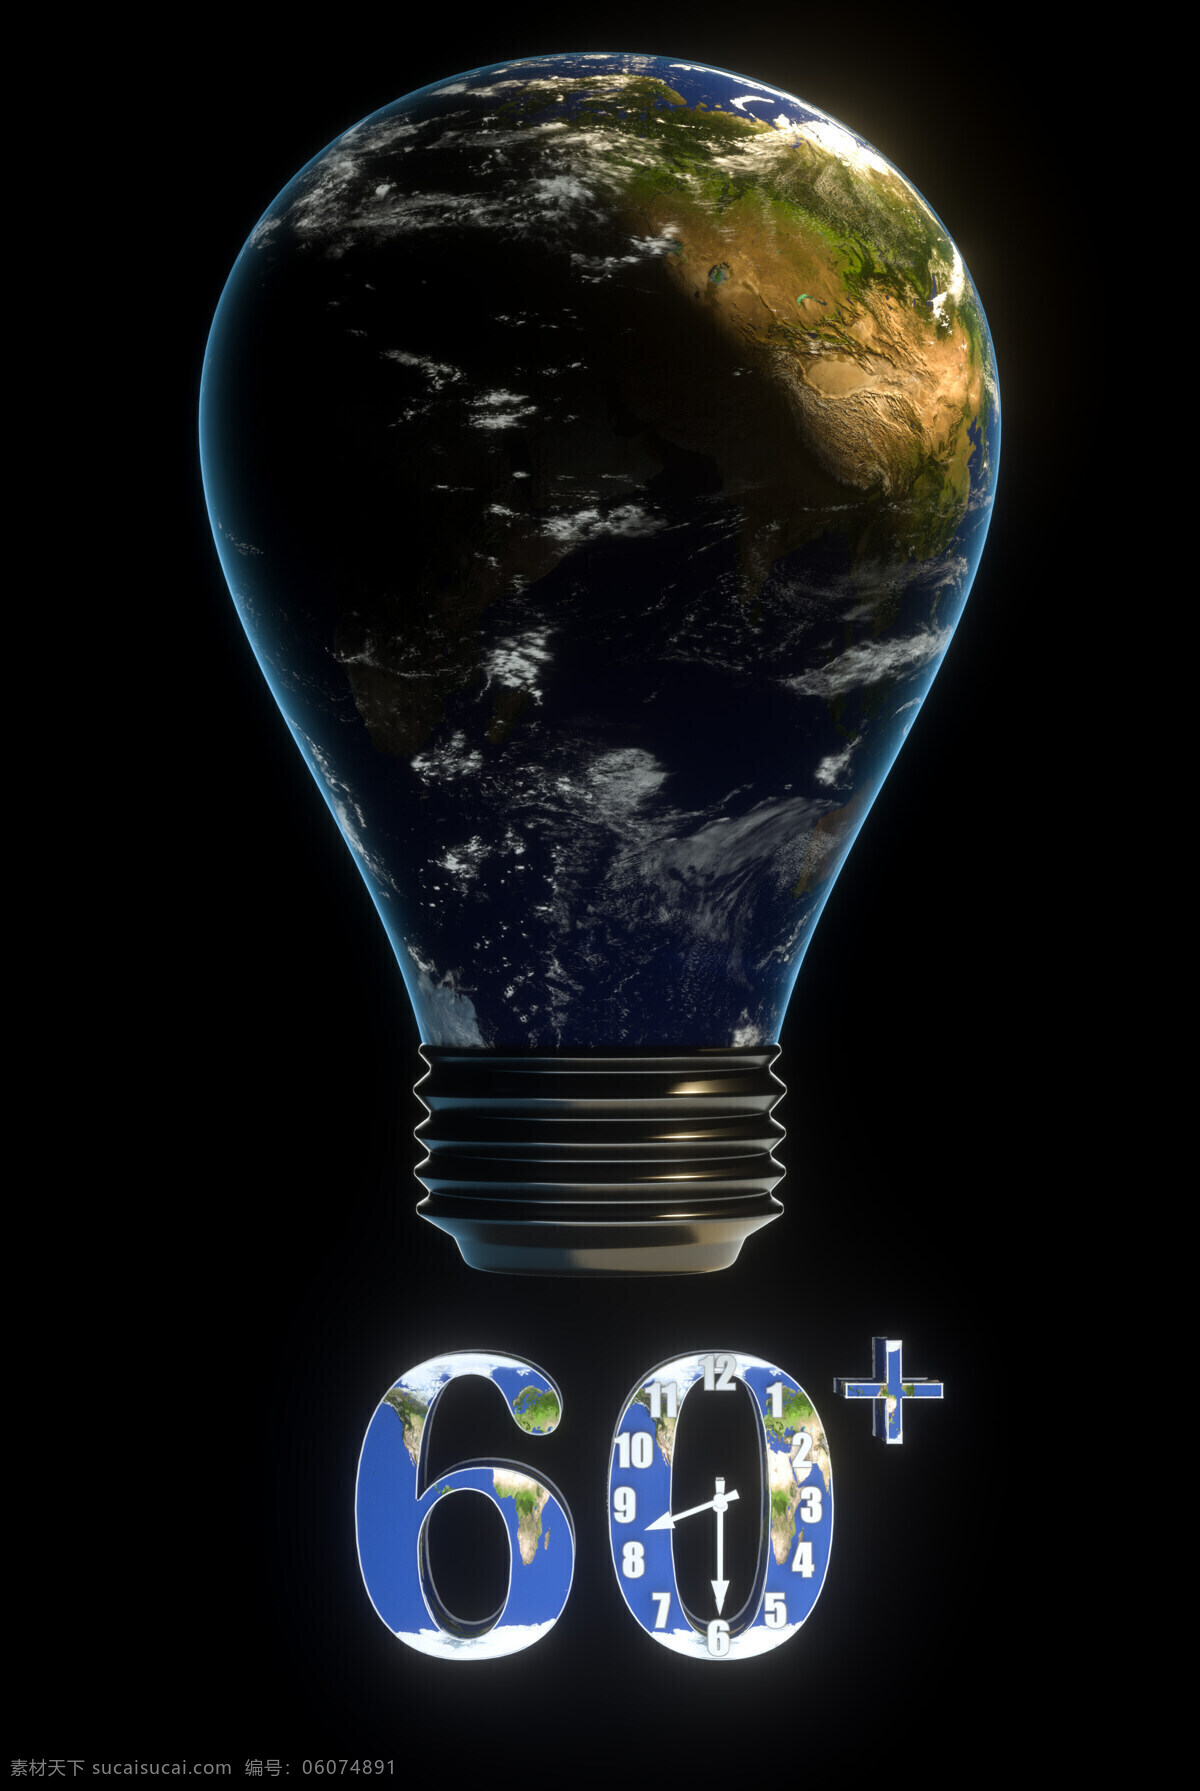 地球 小时 环保 公益 h5 背景 地球一小时 星球 灯泡 节能 夜晚 熄灯 断电 蓝色